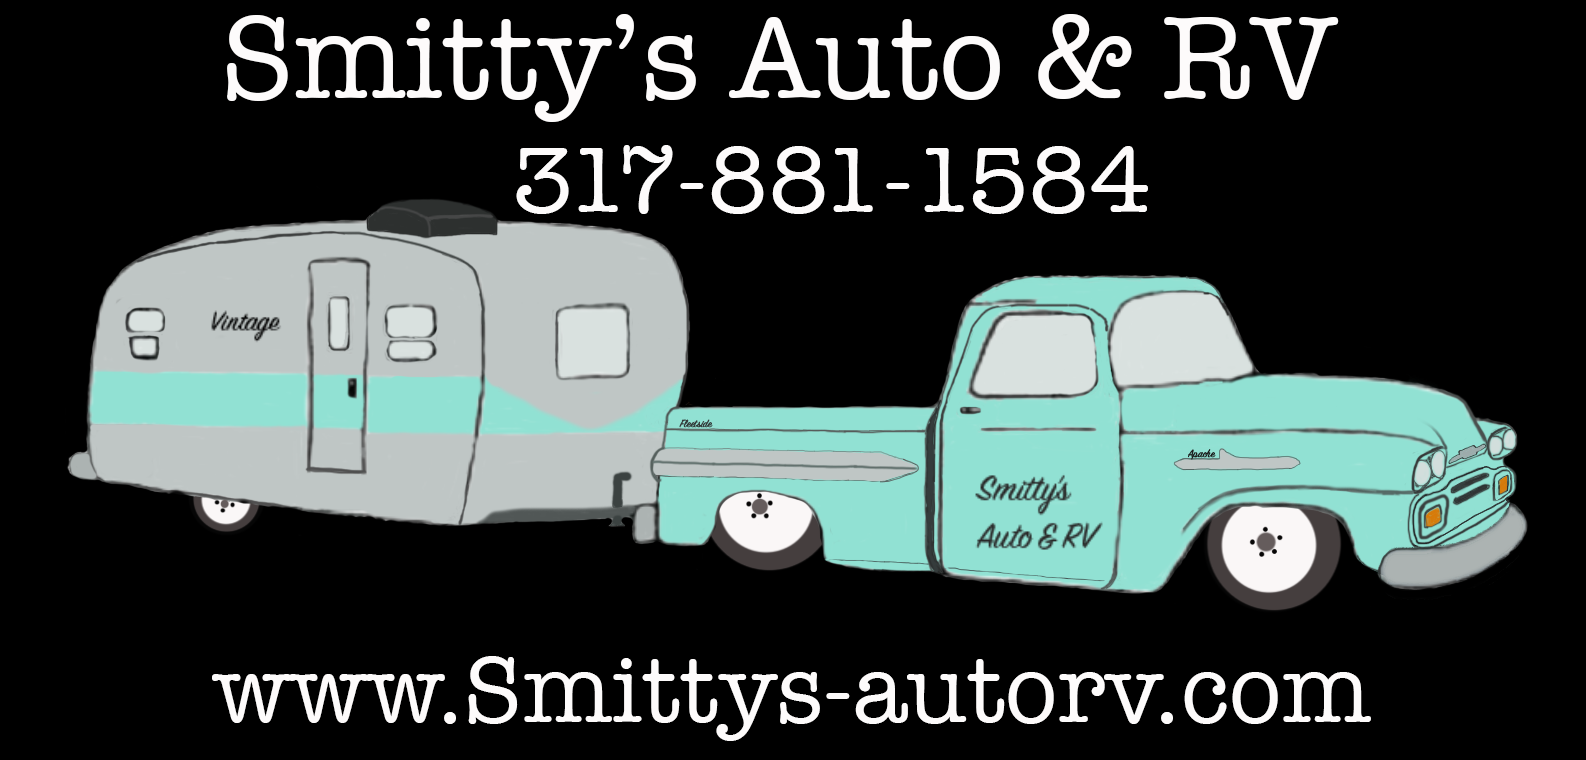 Smitty's Auto & Rv